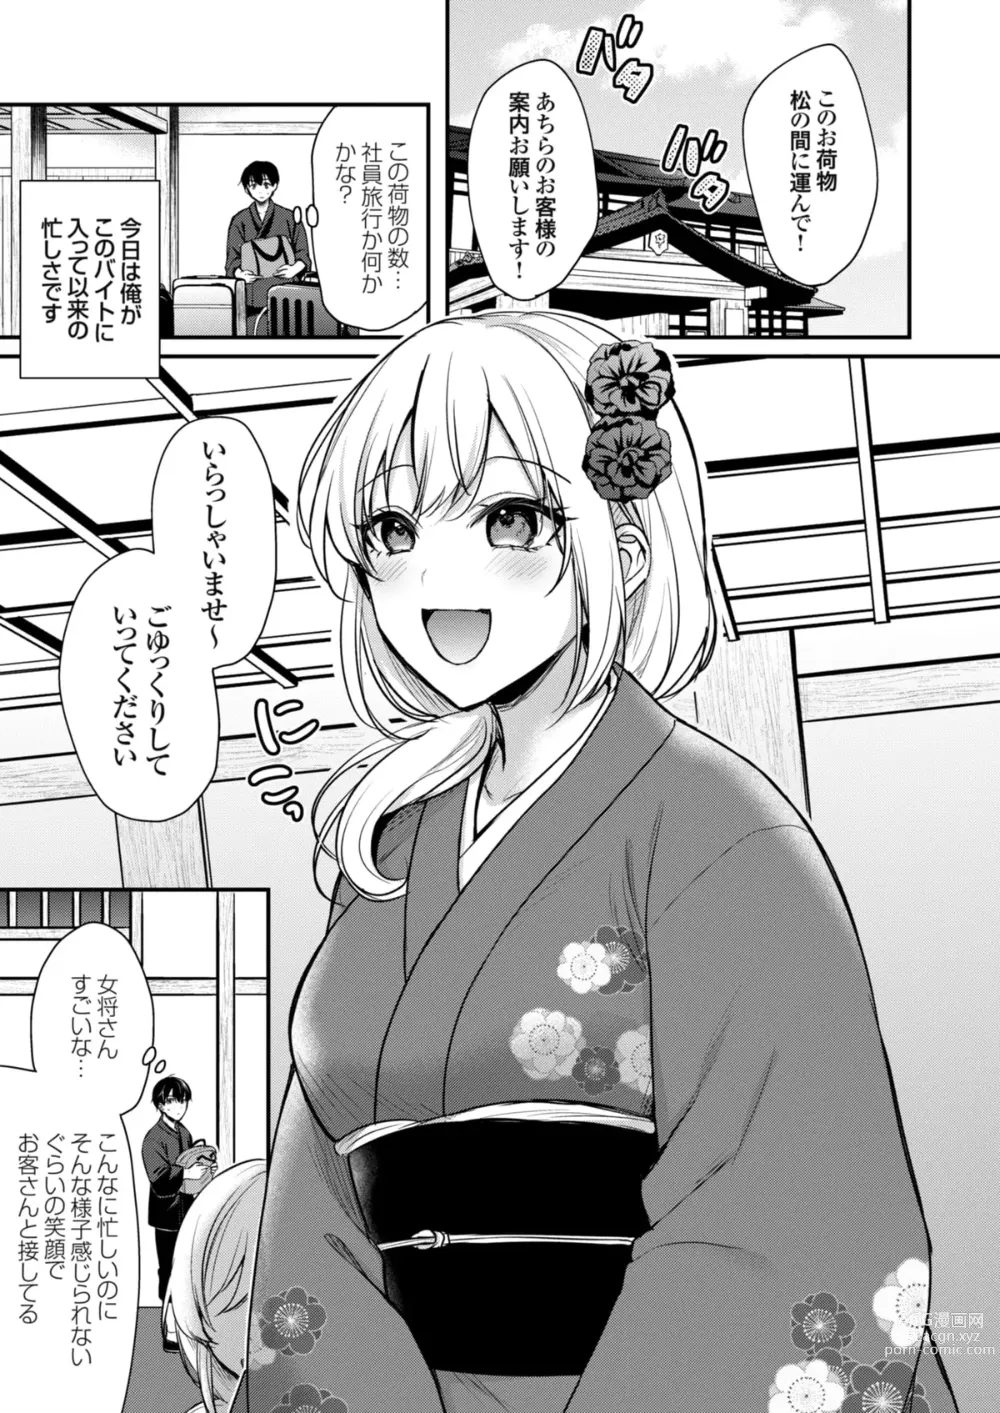 Page 3 of manga Ore no Natsuyasumi wa Gal no Wakaokami to Beit Seikatsu!?